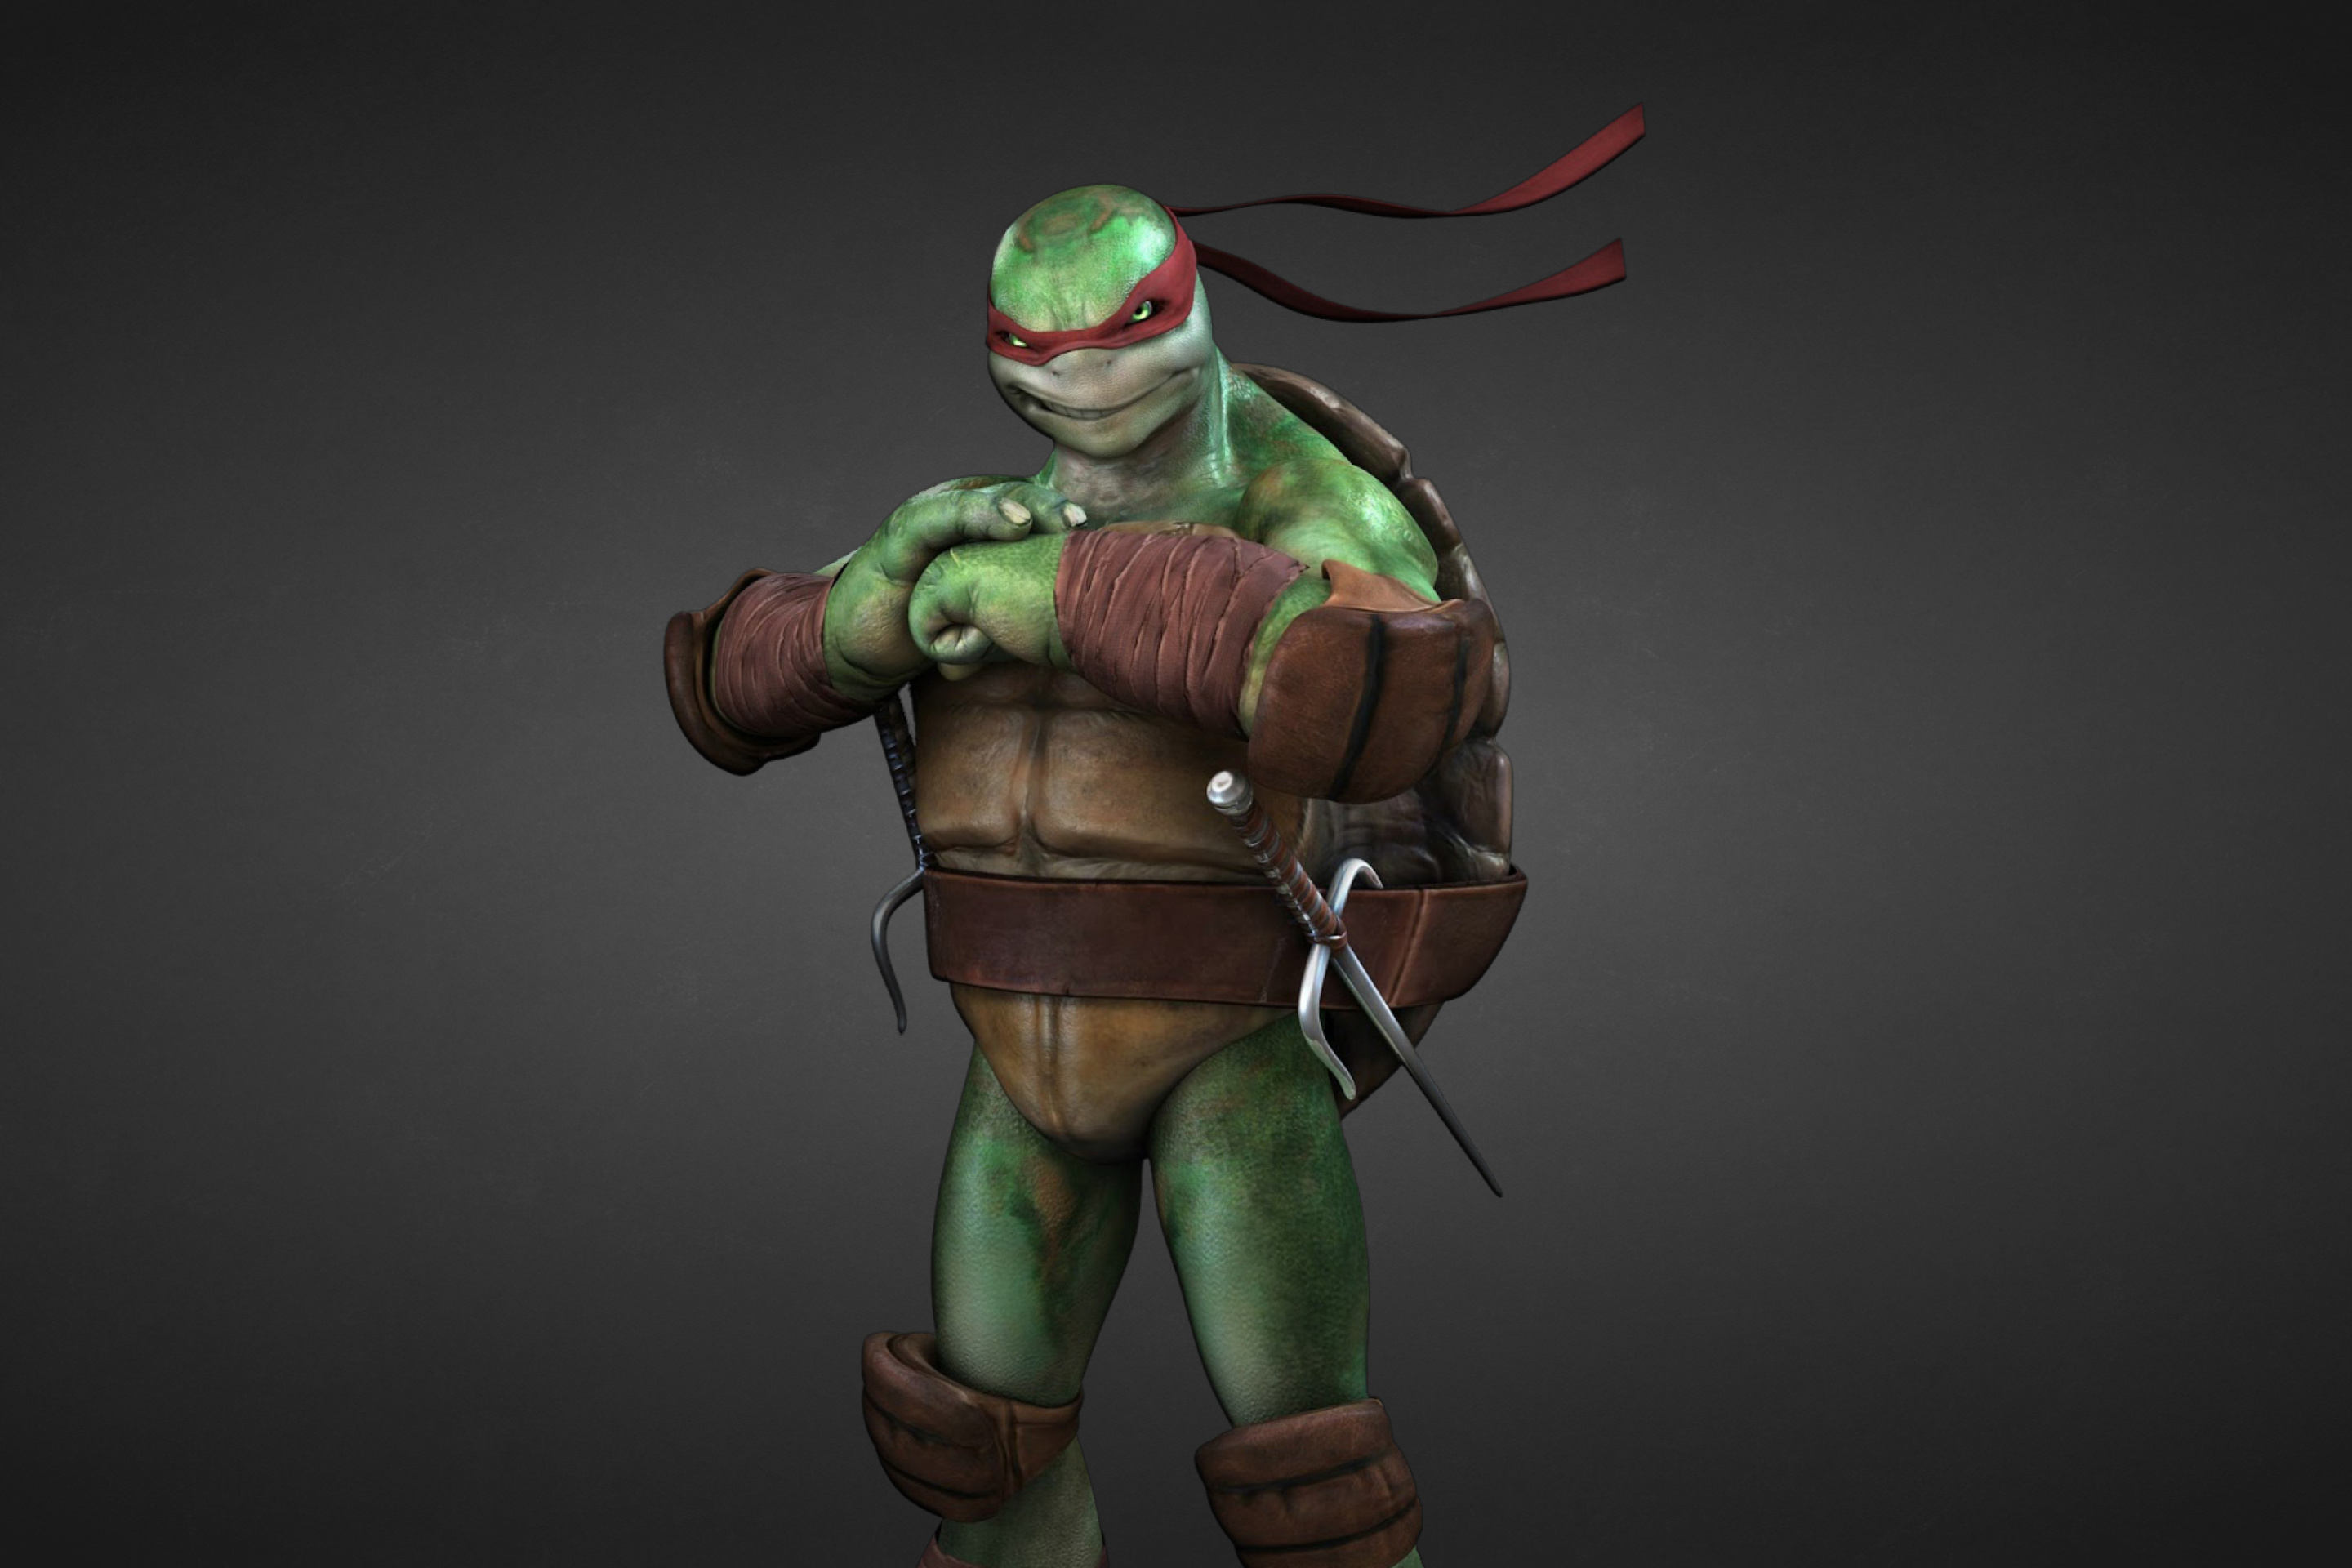 Sfondi Raphael - Teenage Mutant inja Turtles 2880x1920